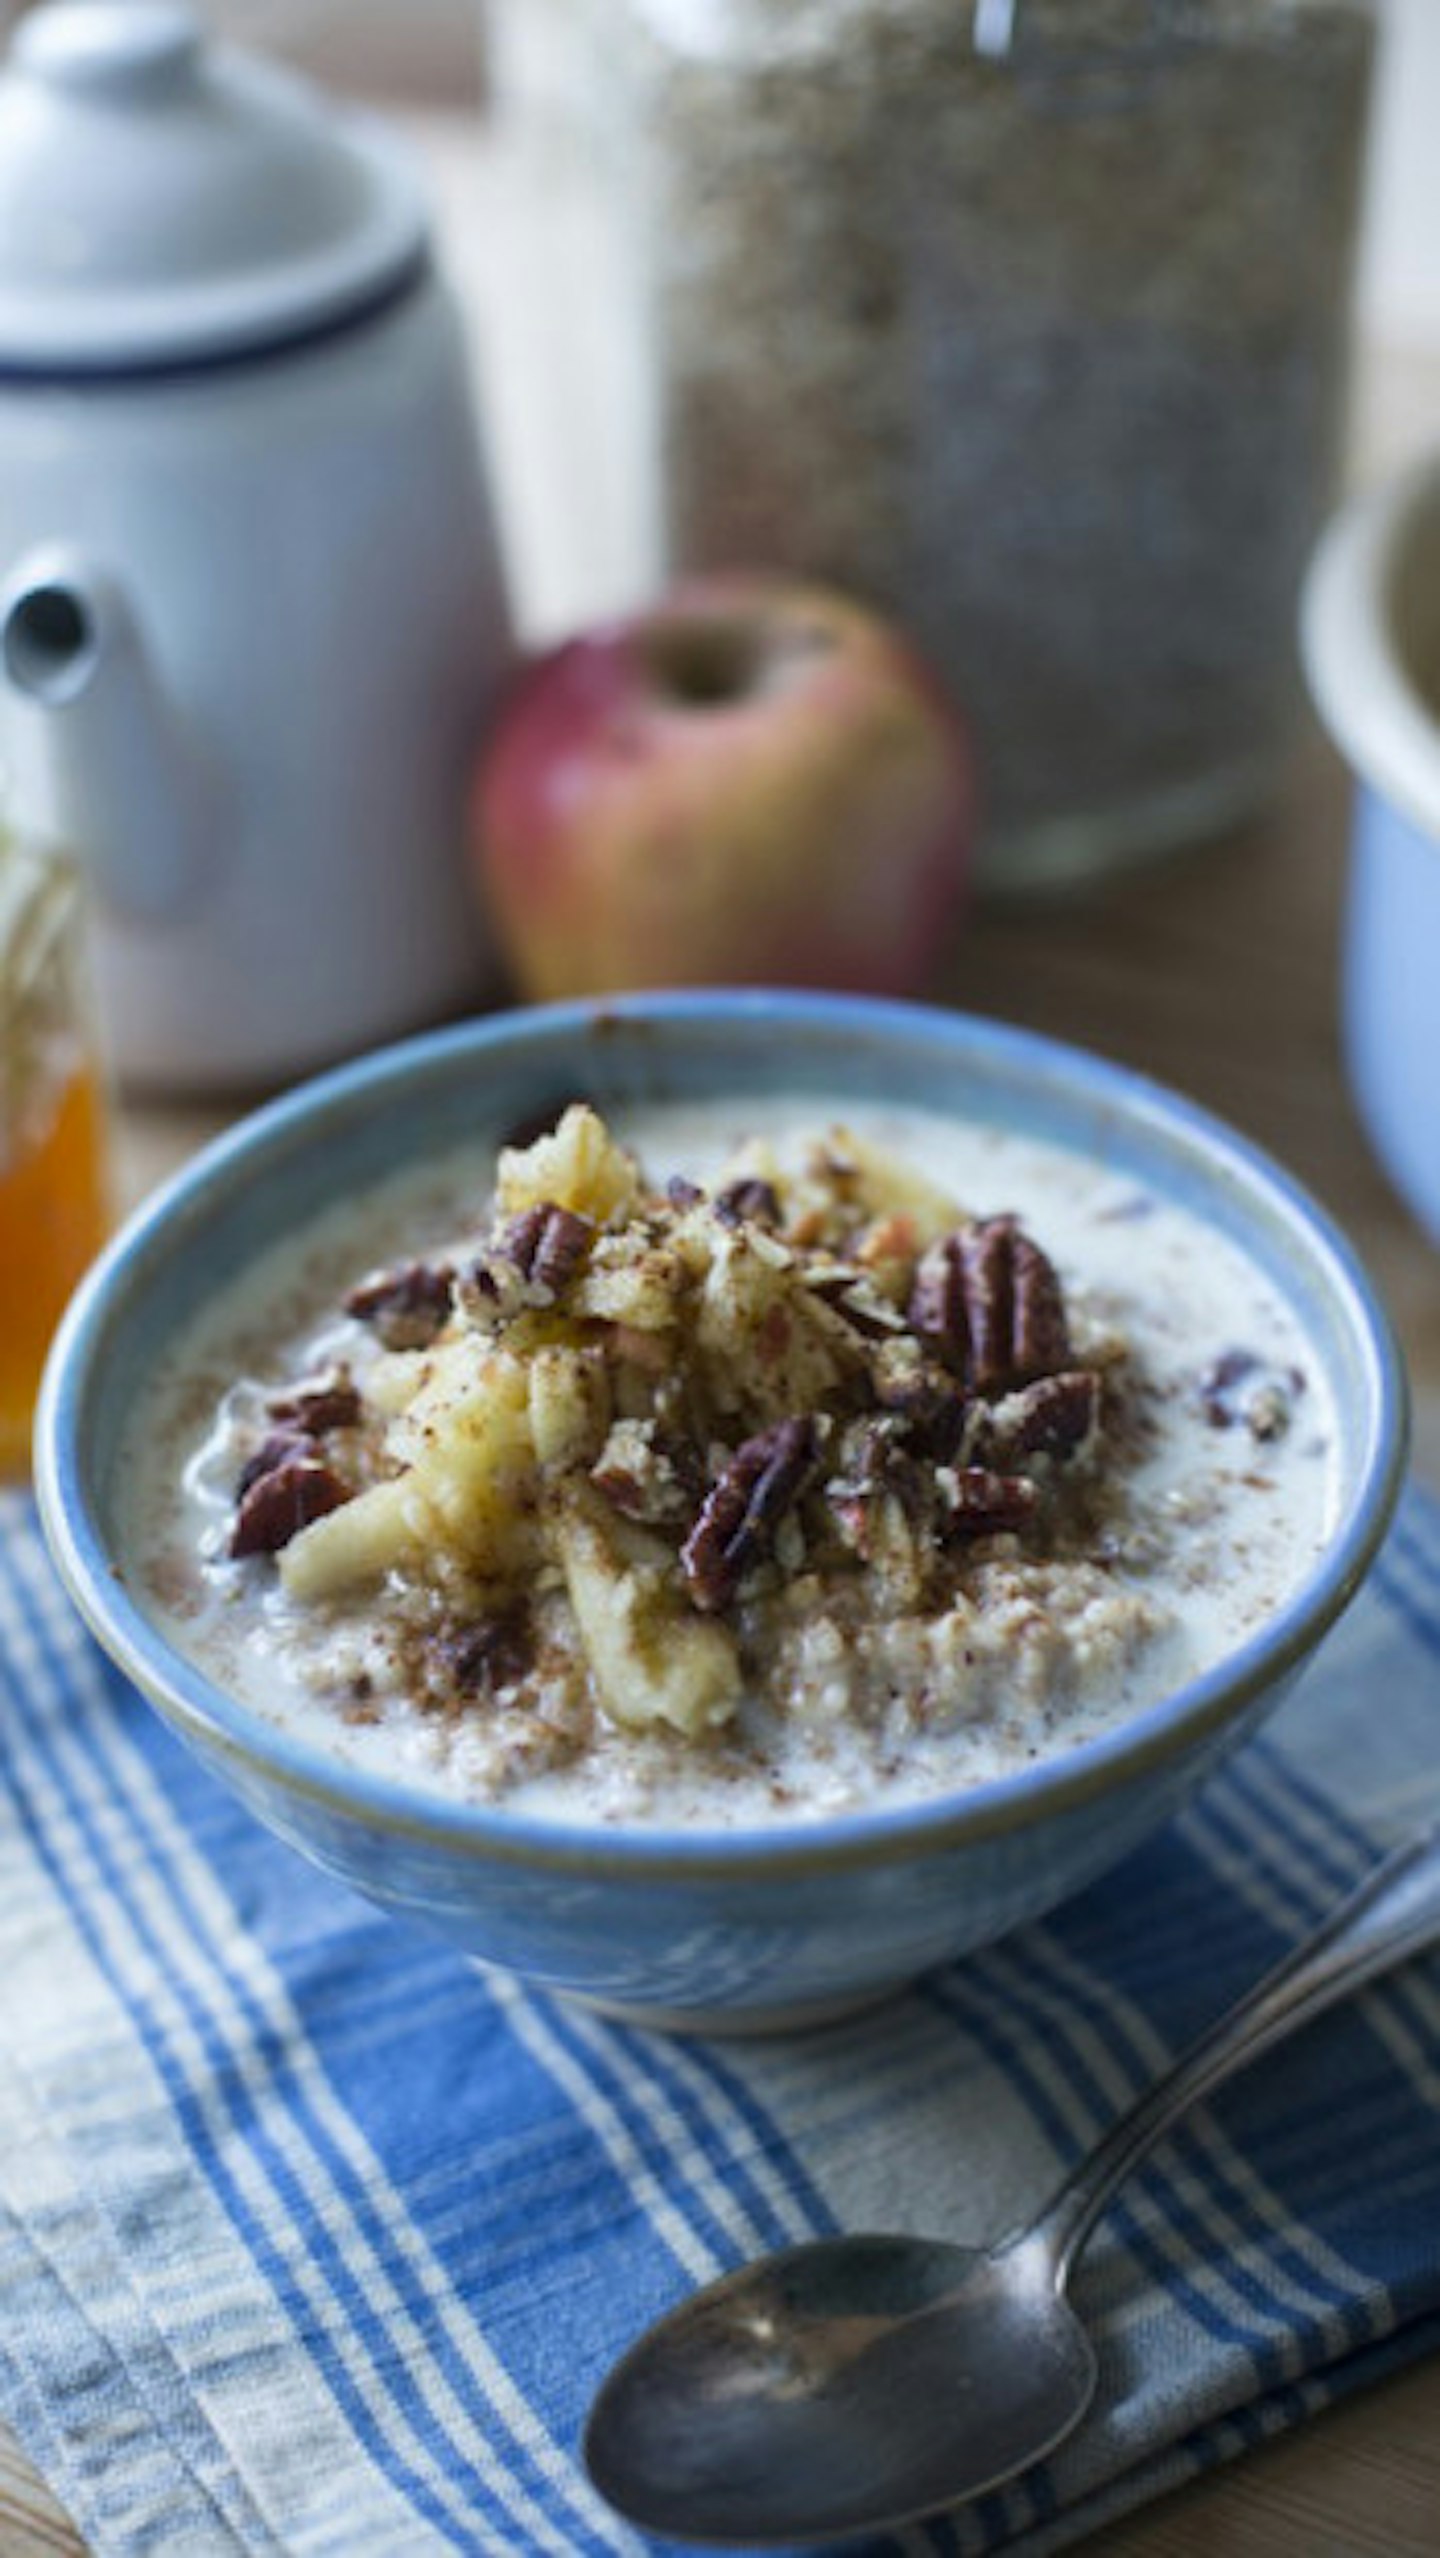 A Non-Boring Porridge To Make This Week That You Won't Get Sick Of